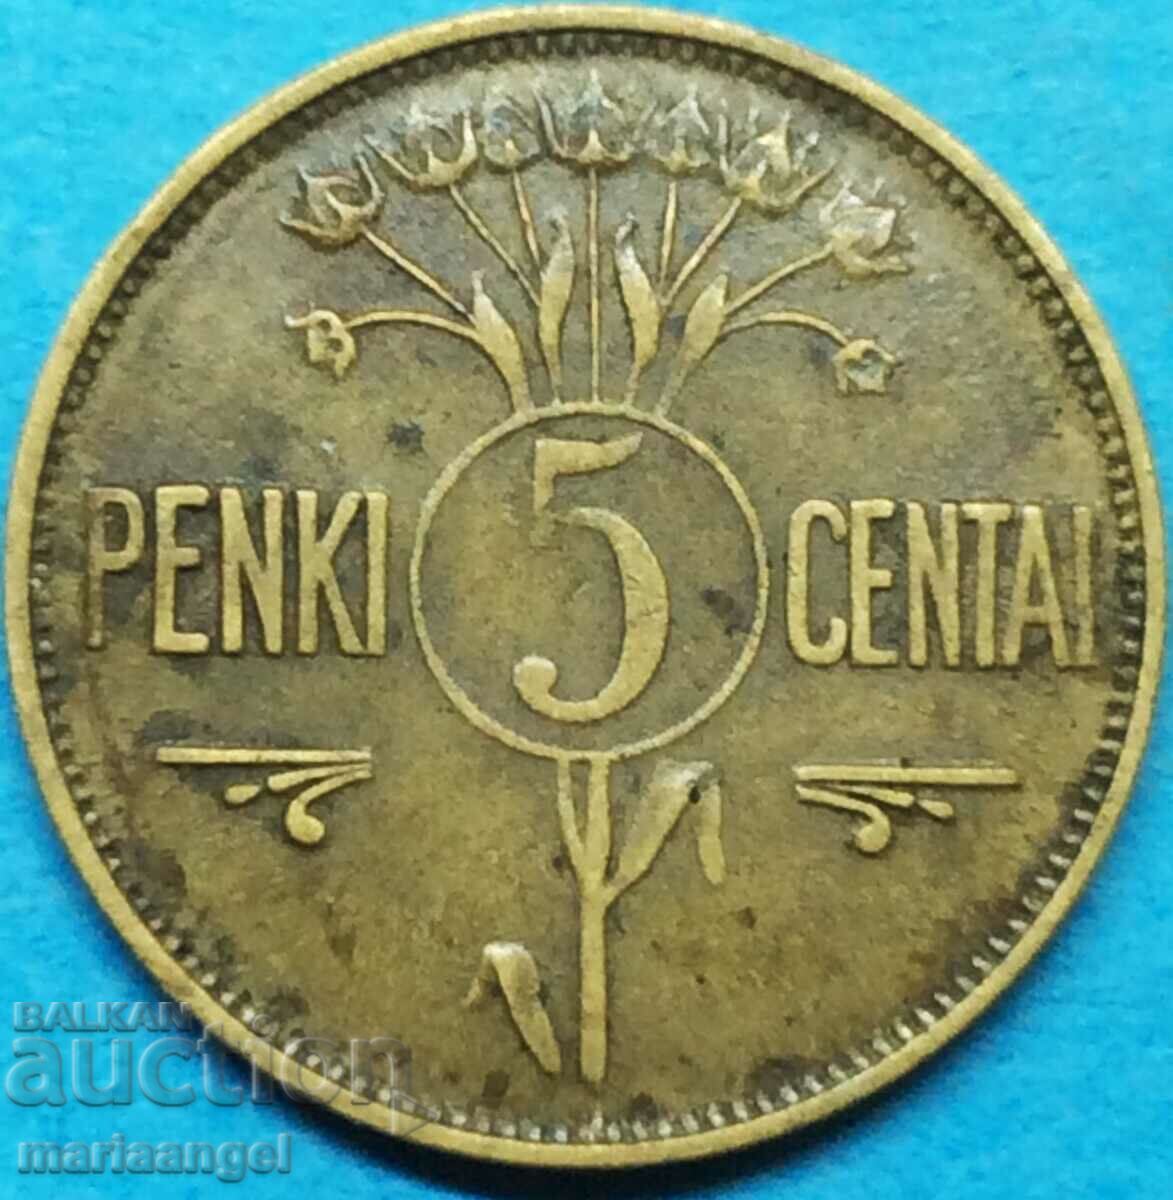 Λιθουανία 1925 5 centai